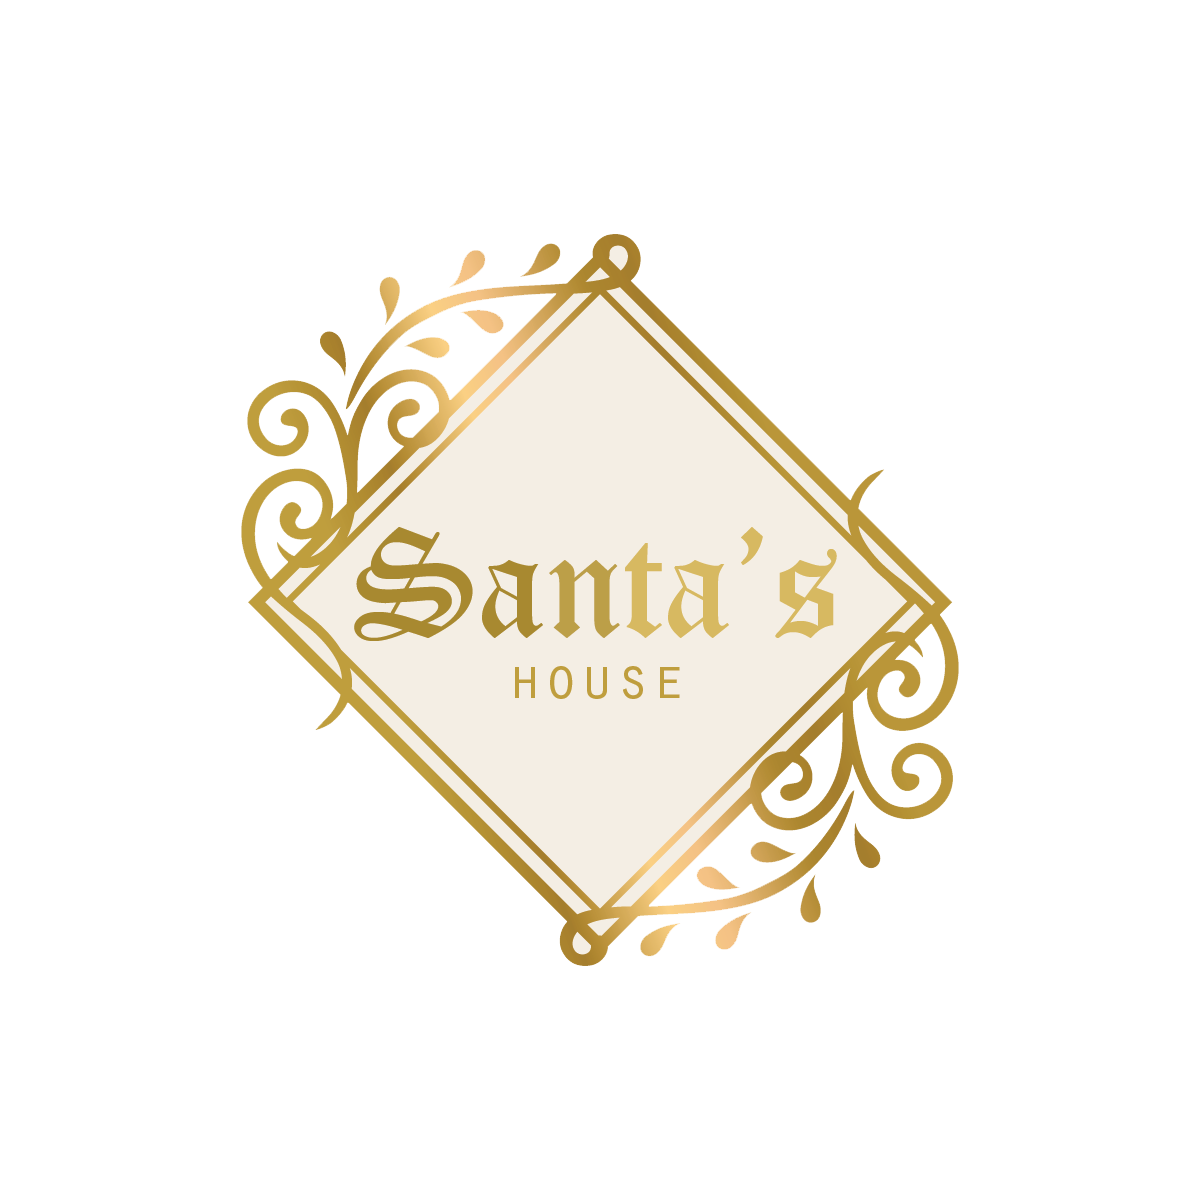 Santa’s House